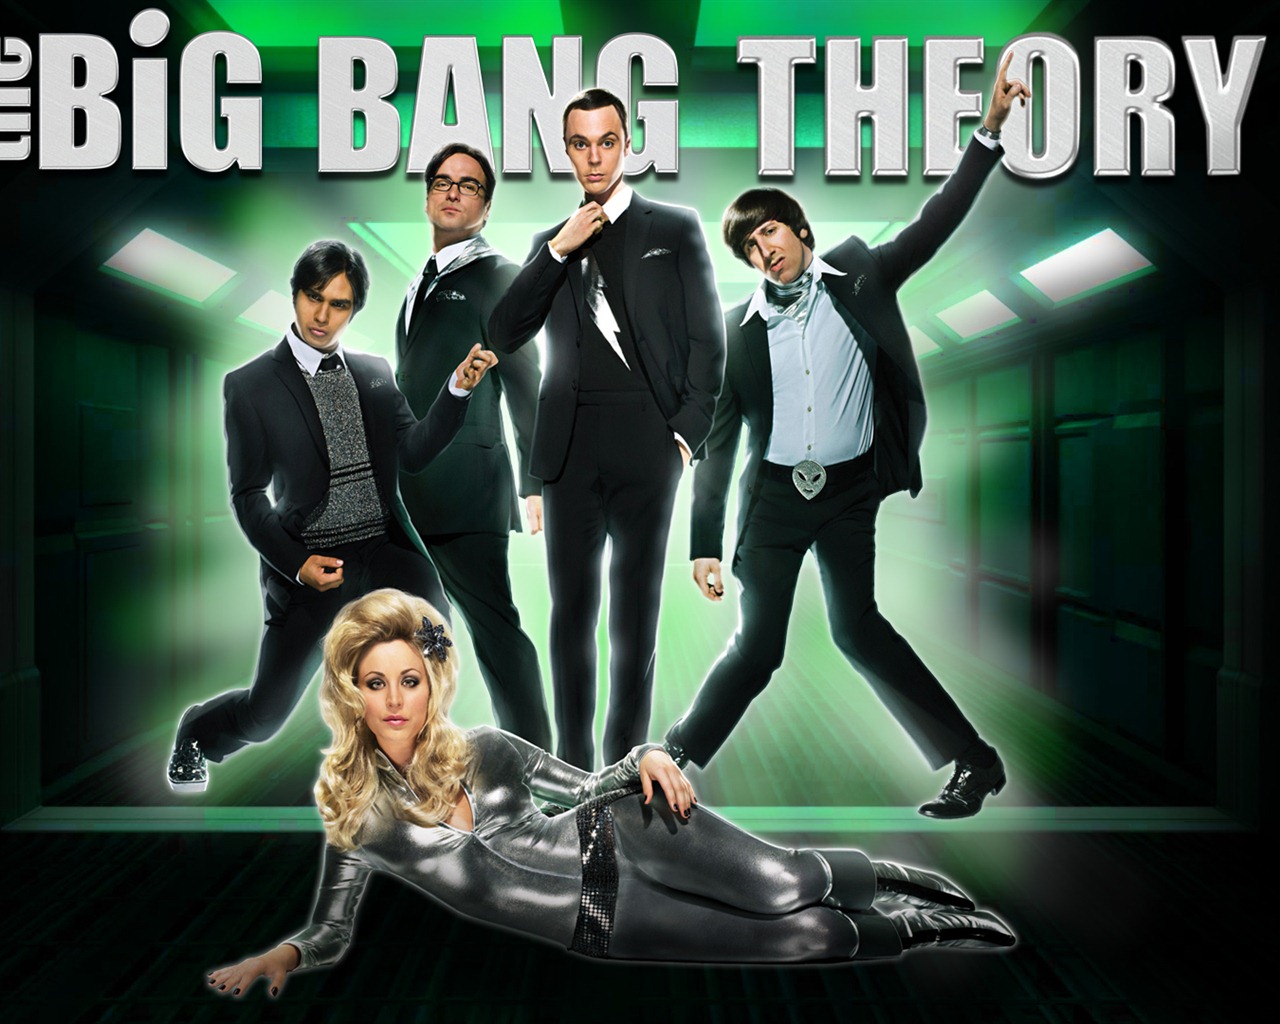 The Big Bang Theory 生活大爆炸 电视剧高清壁纸6 - 1280x1024